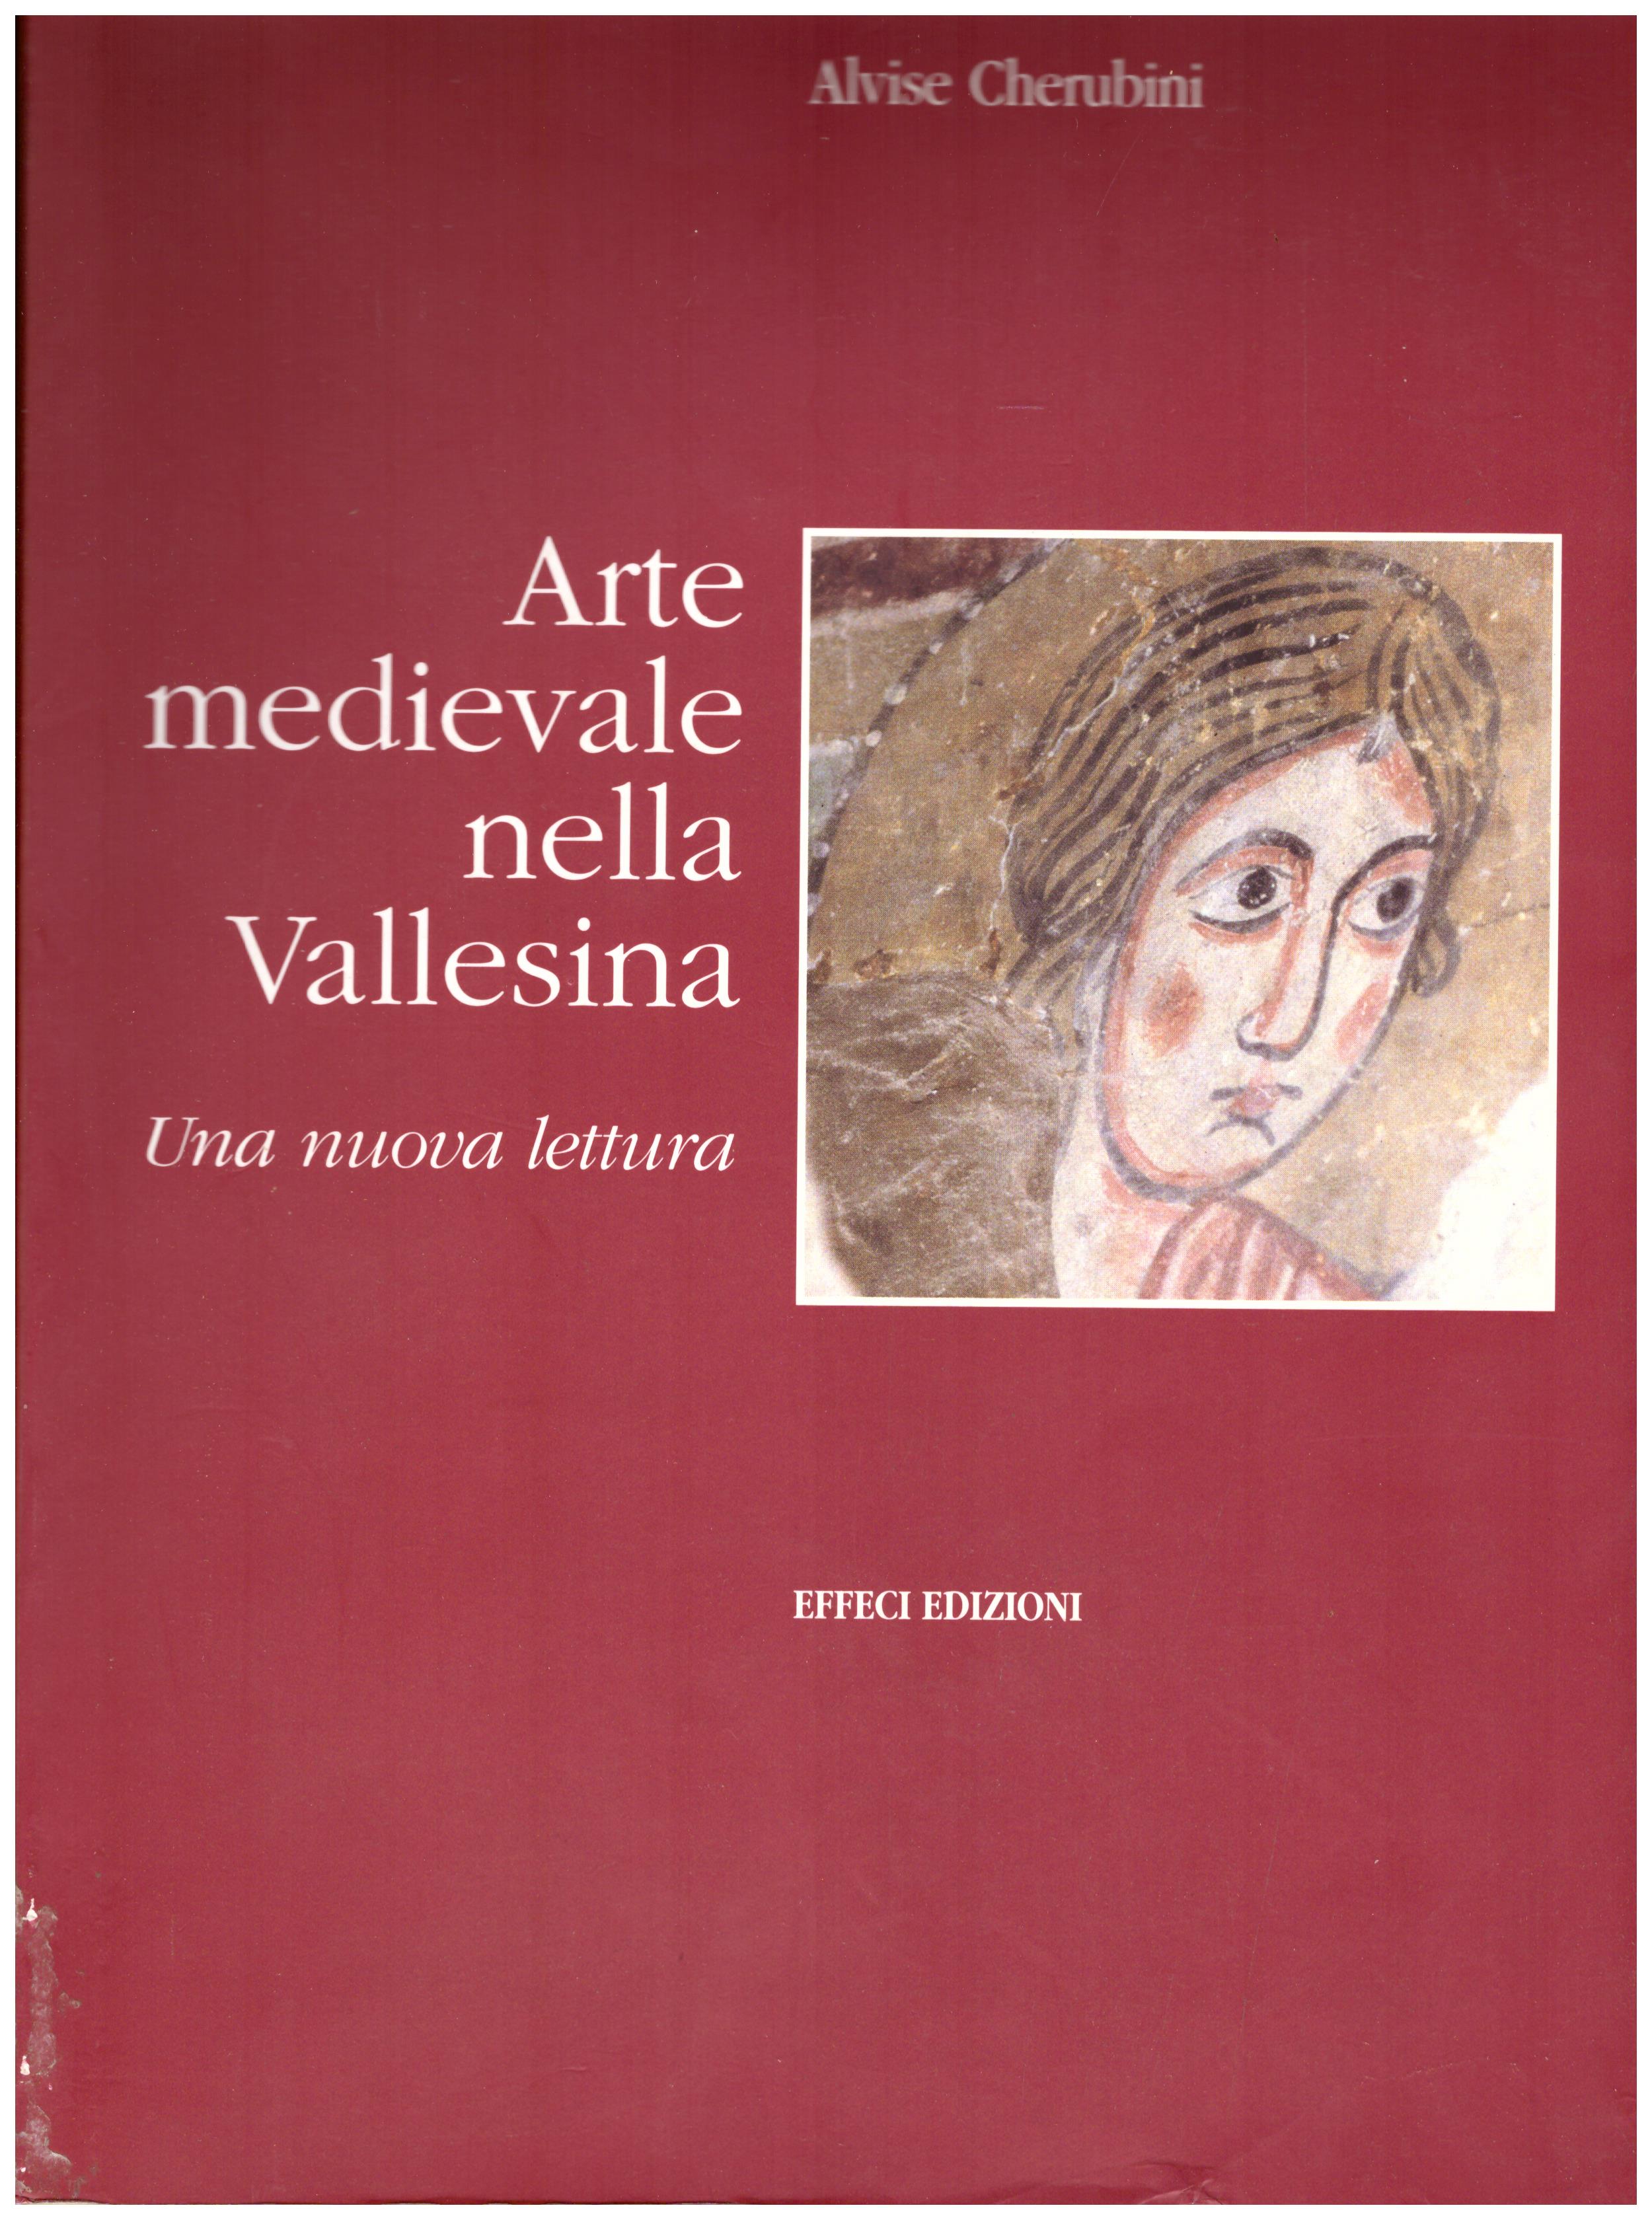 Titolo: Arte medievale nella Vallesina     Autore: Alvise Cherubini    Editore: Effici edizioni N. 006262